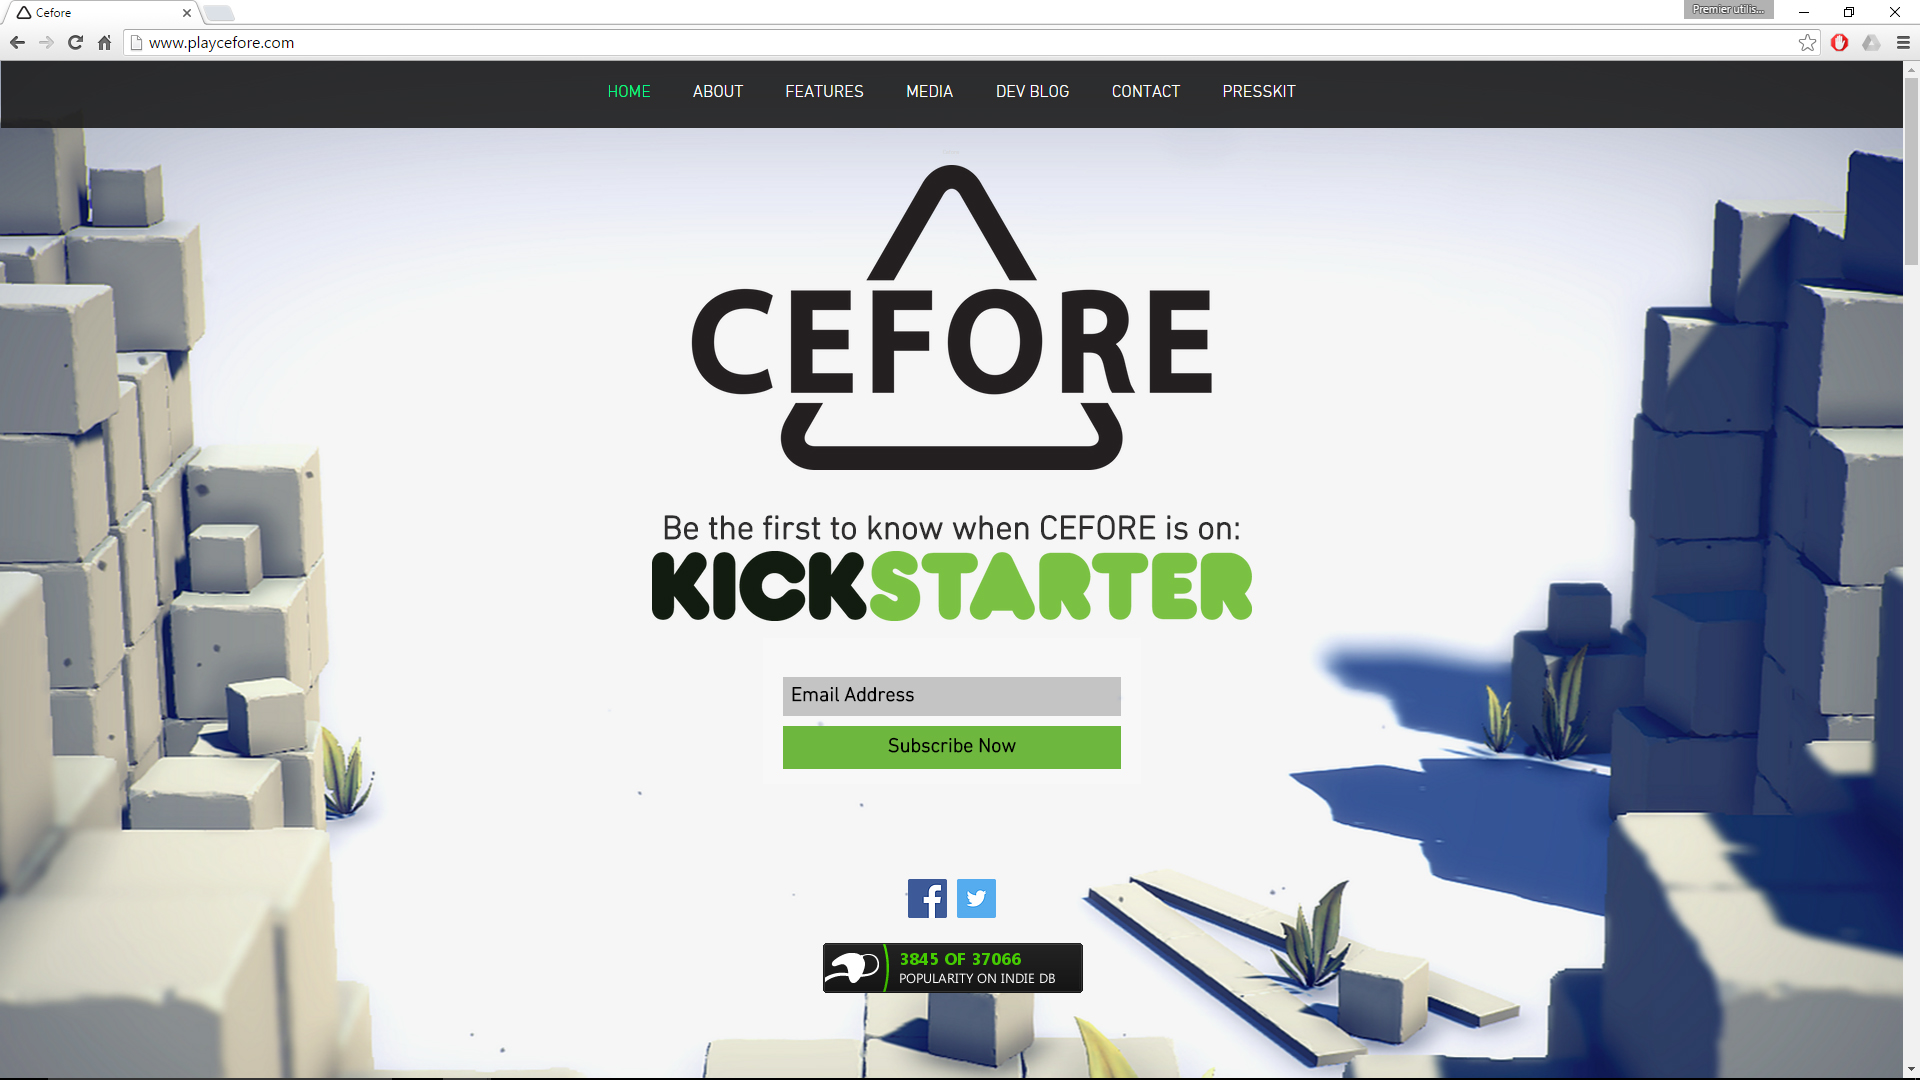 Kickstarter Cefore